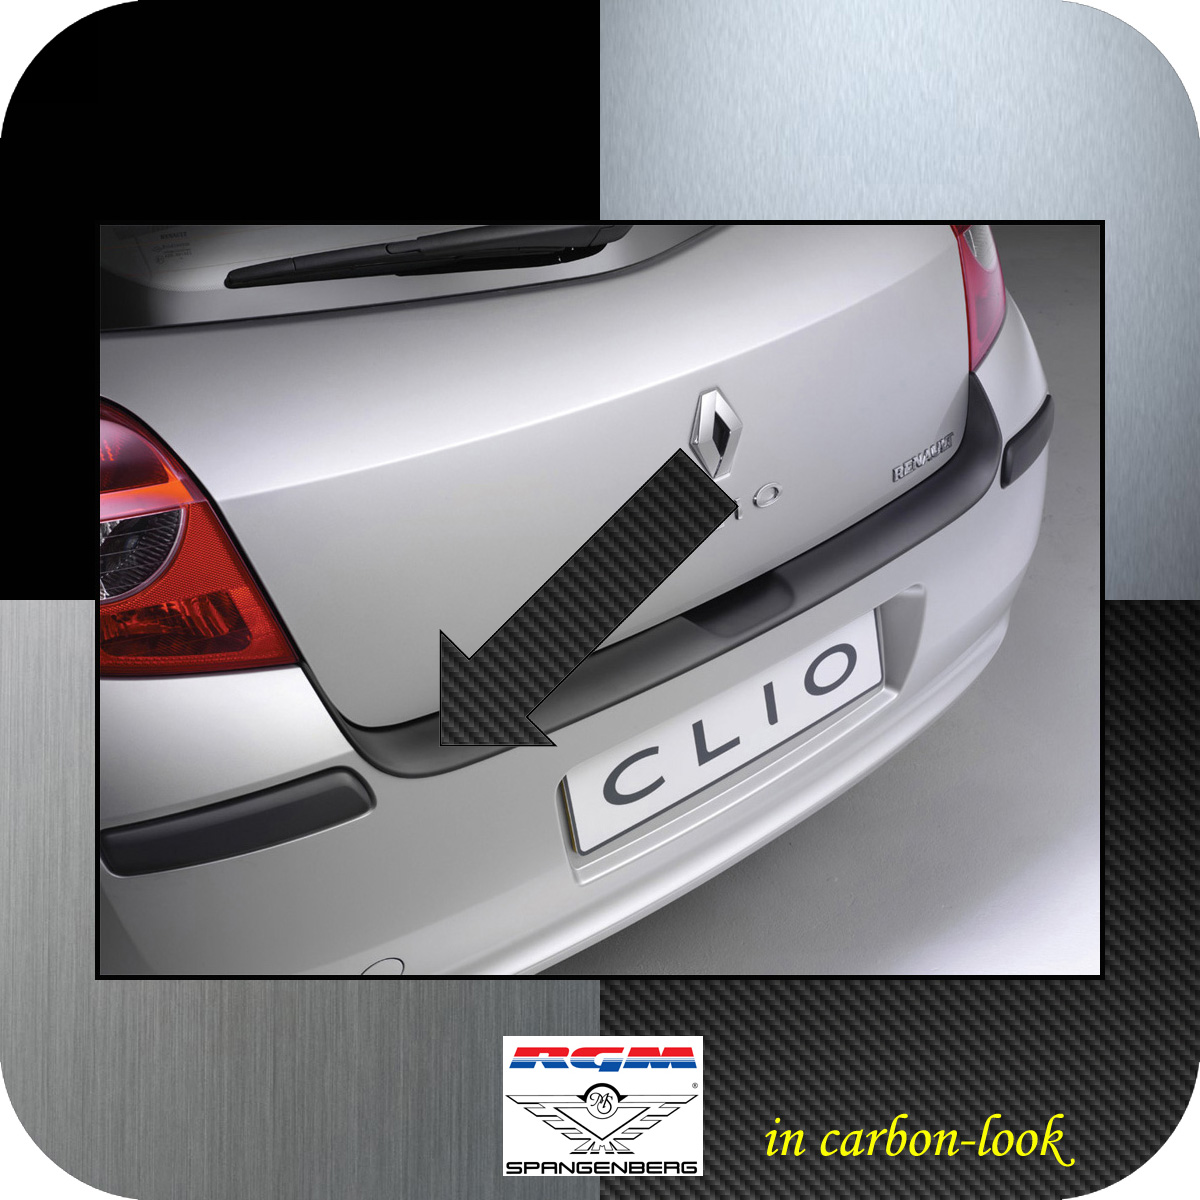 Ladekantenschutz Carbon-Look Renault Clio 3 III vor facelift Bj 2005-09 3509145